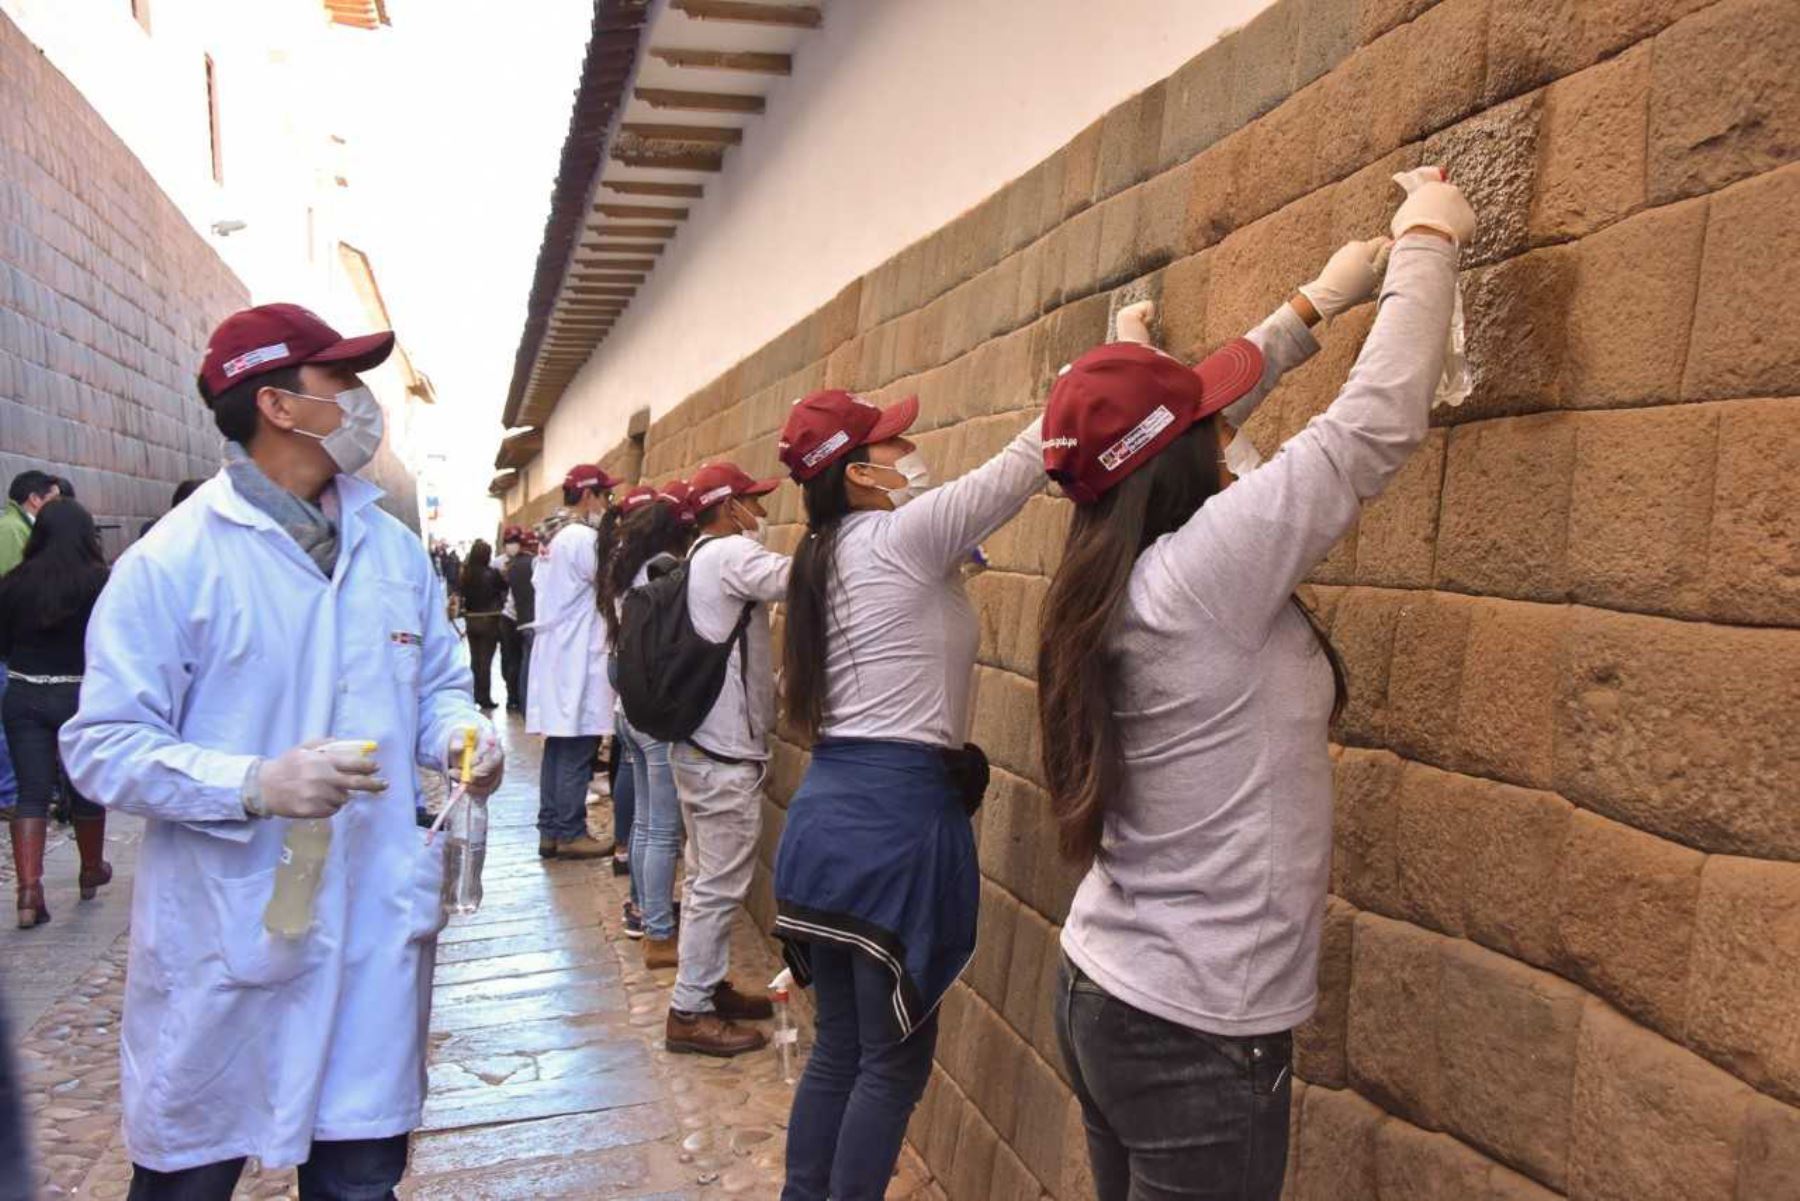 Decenas de jóvenes universitarios iniciaron una jornada de limpieza de muros incas en la calle Loreto, ingreso a la plaza de Armas de la ciudad de Cusco, como parte de la campaña de conservación del patrimonio cultural "Dale vida a tu patrimonio", promovida por la Dirección Desconcentrada de Cultura de Cusco.